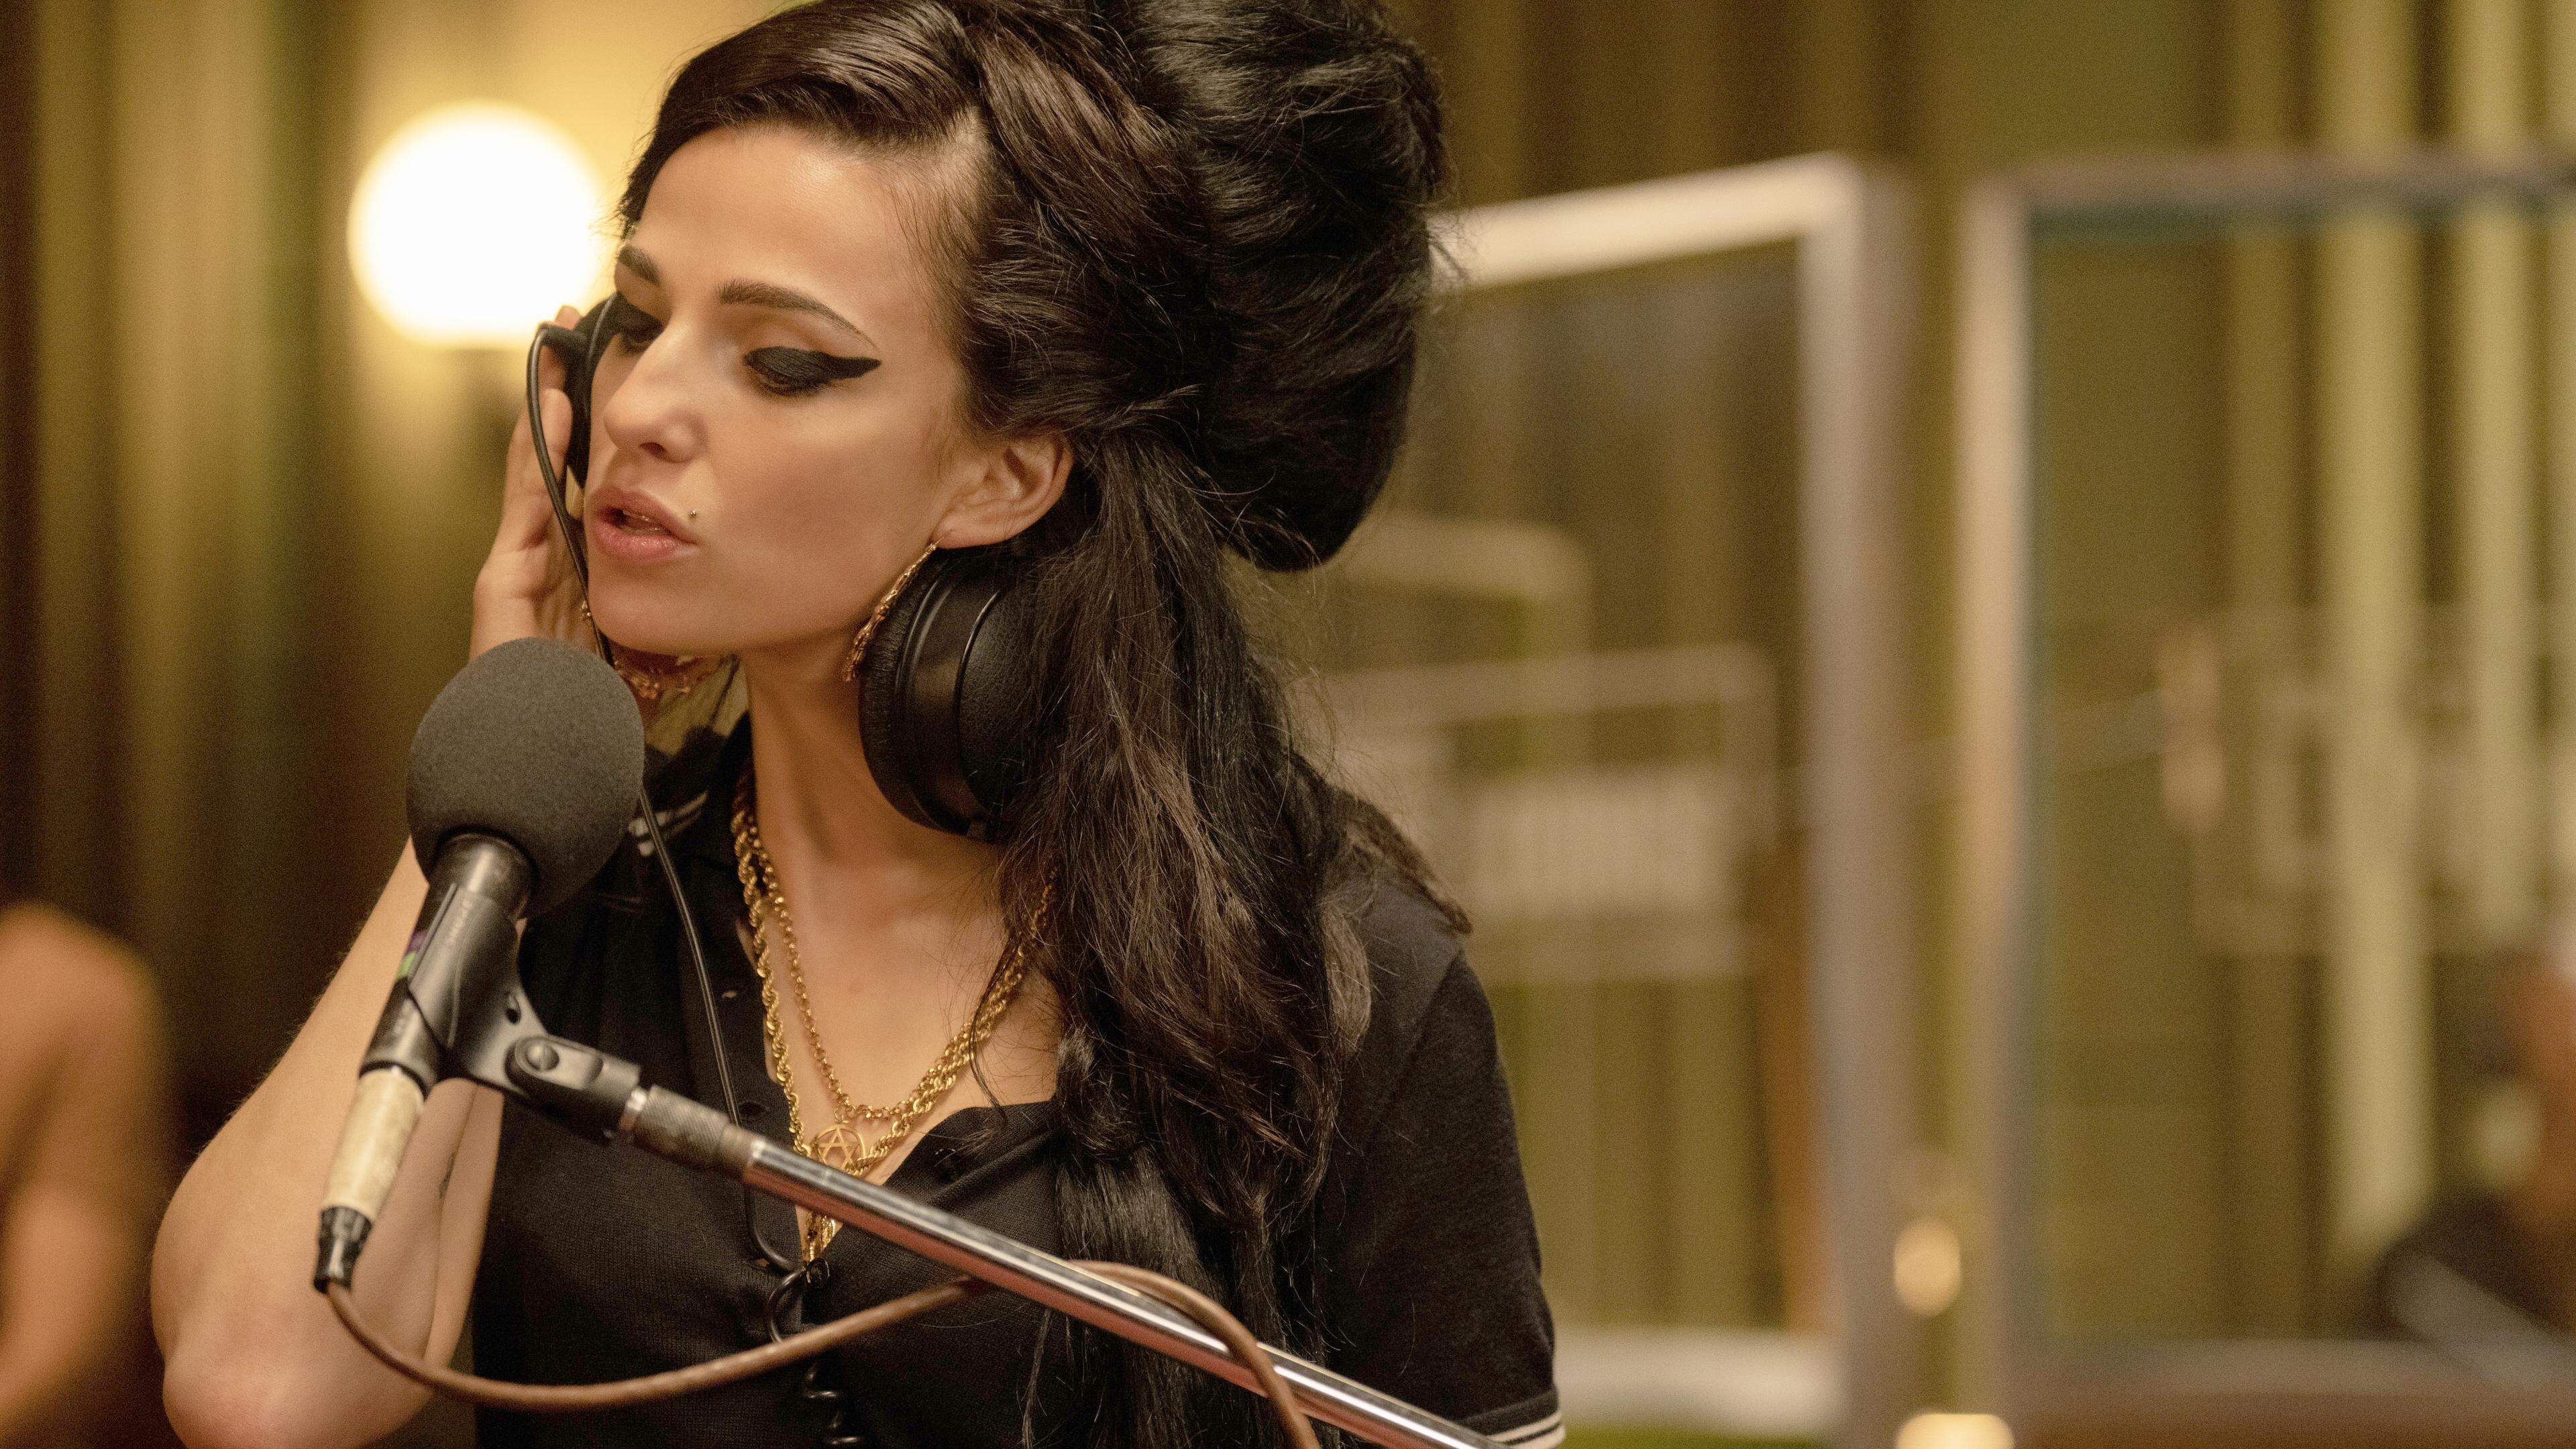 Marisa Abela überzeugt in „Back to Black“ als Amy Winehouse. Auch wenn der Film recht oberflächlich ist, verfügt er doch über starke Momente.